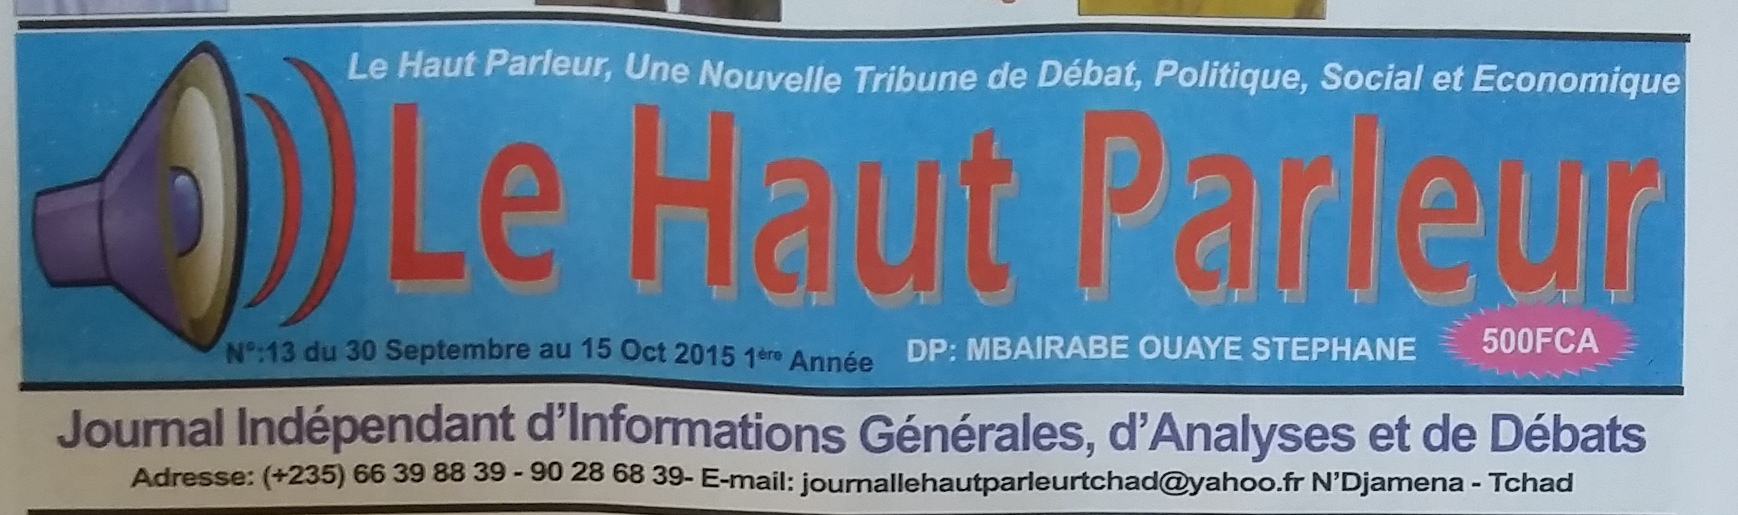 Tchad : le DP du journal Haut-parleur libéré